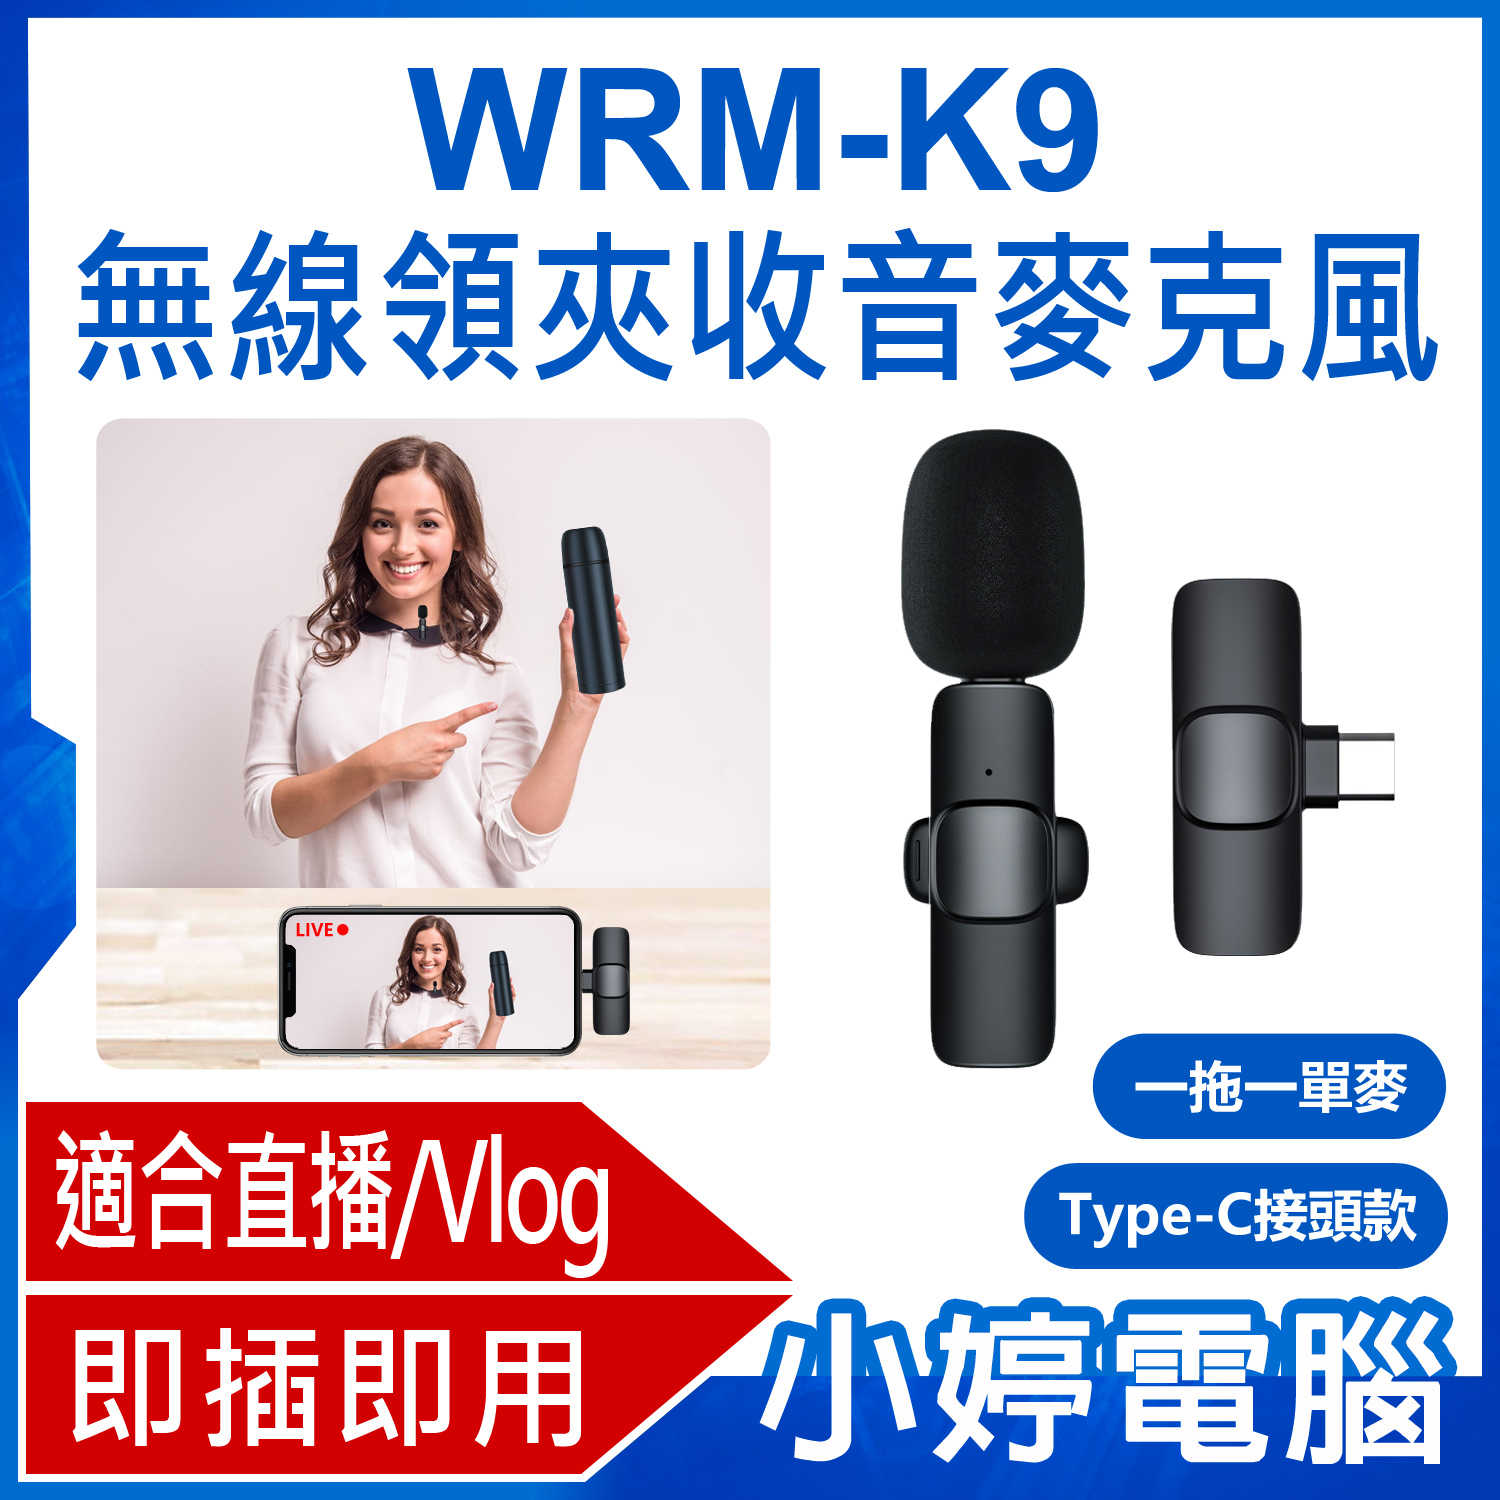 【小婷電腦】WRM-K9 Type-C接頭款 一拖一單麥 直播網美大推 無線領夾收音麥克風 Vlog採訪